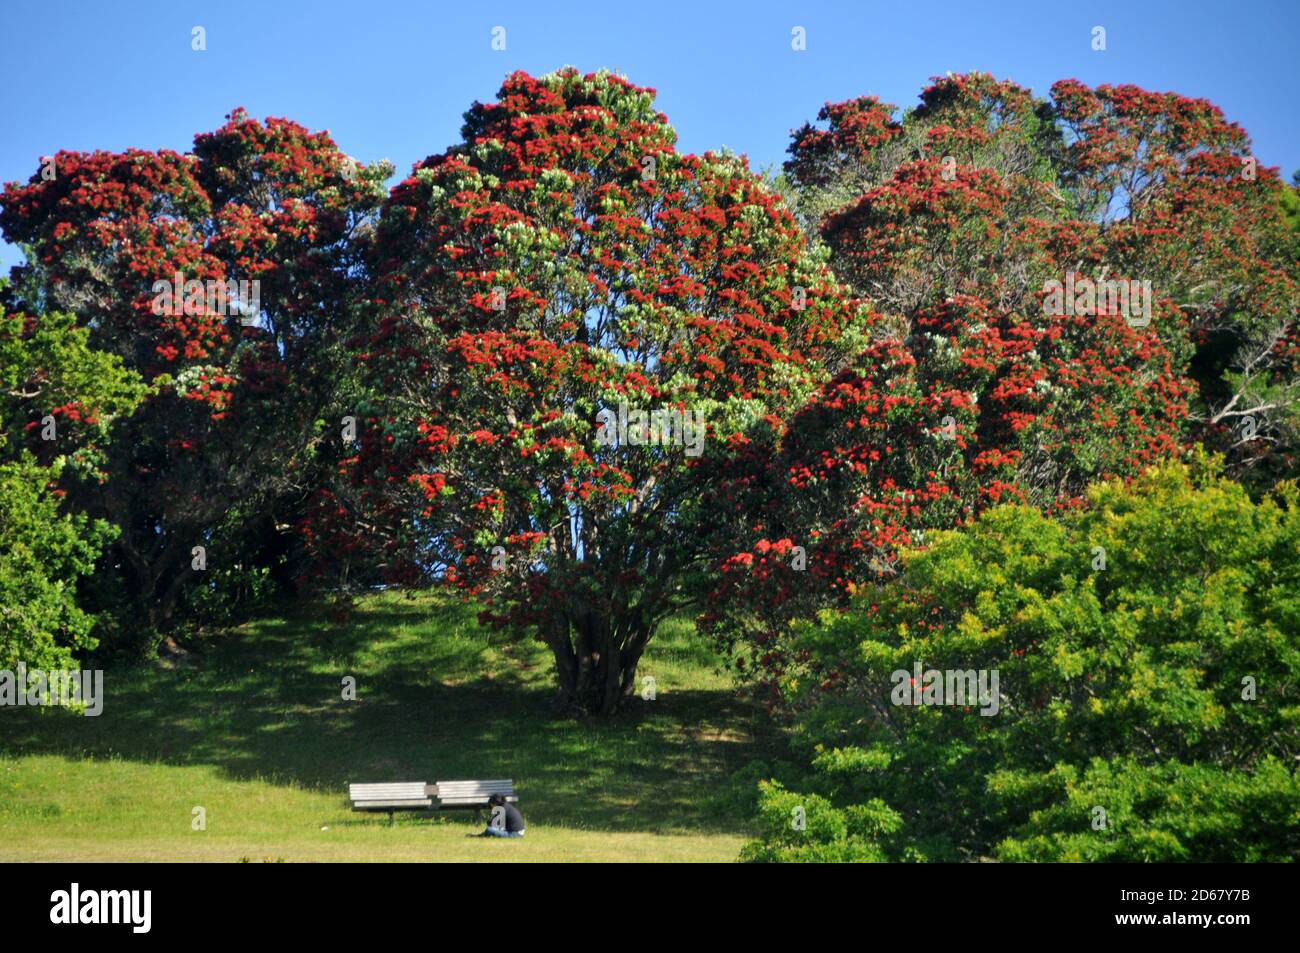 Pohutukawa Baum oder Neuseeland Weihnachtsbaum, Metrosideros excelsa, blühend, endemisch in Neuseeland, Wellington Botanic Garden, North Island, New Z Stockfoto